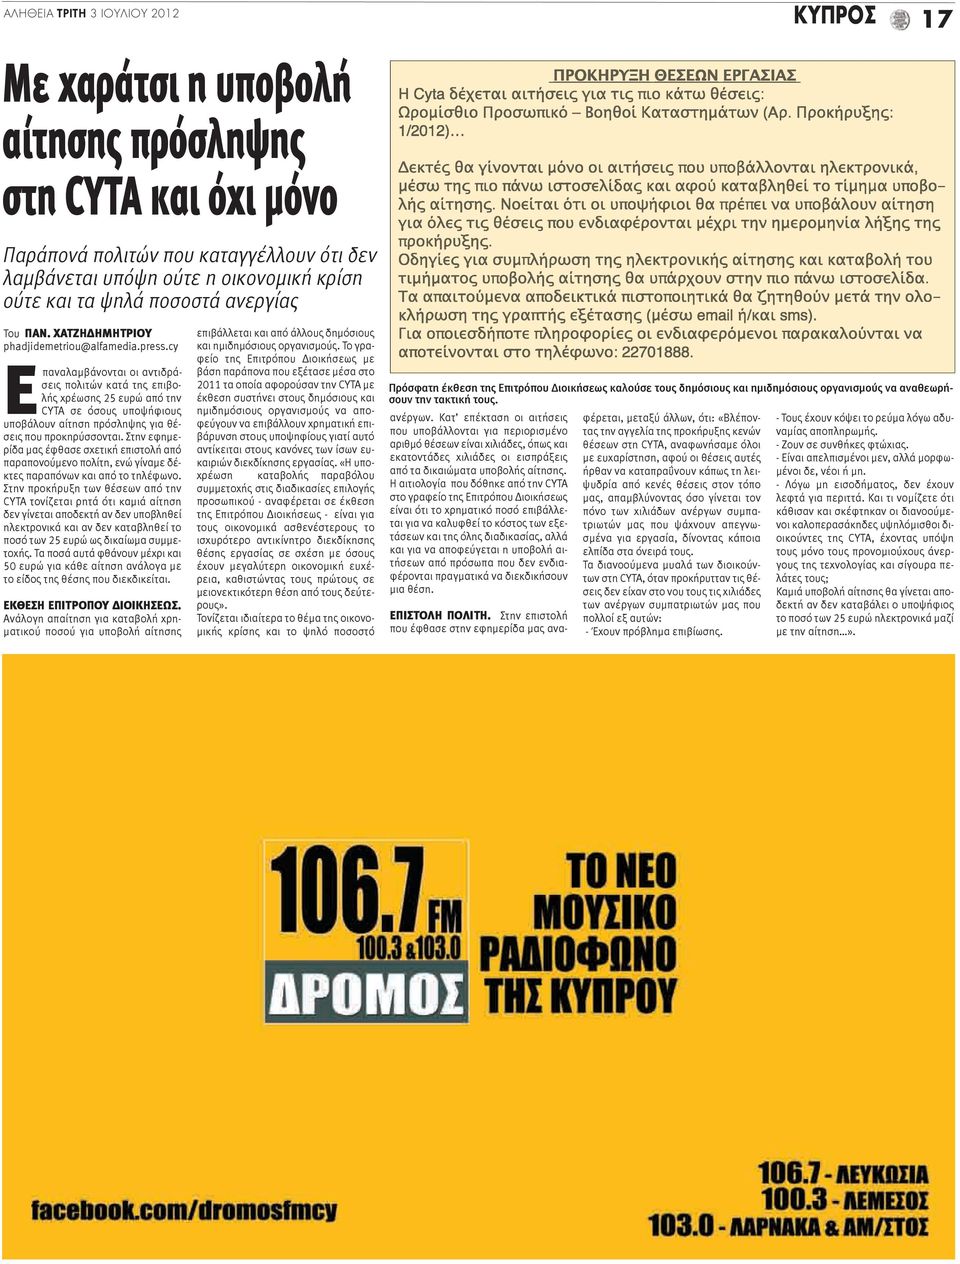 cy Επαναλαμβάνονται οι αντιδράσεις πολιτών κατά της επιβολής χρέωσης 25 ευρώ από την CYTA σε όσους υποψήφιους υποβάλουν αίτηση πρόσληψης για θέσεις που προκηρύσσονται.